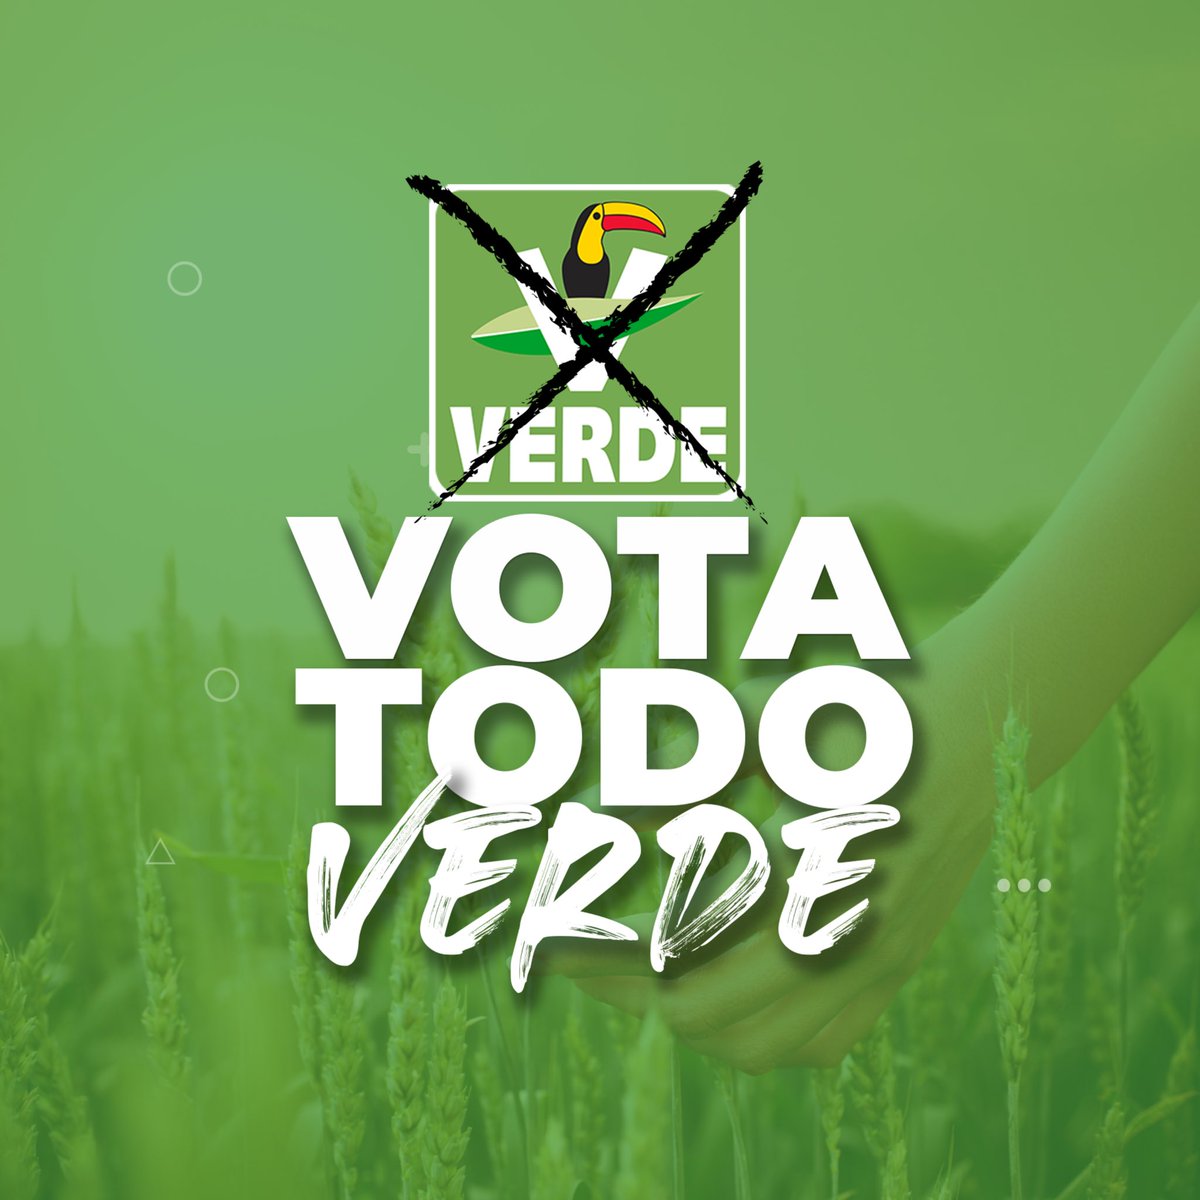 ¡#VotaVerde para un futuro más sostenible!

Este 2 de junio #VotaTodoVerde 

 #VotaVerde #SomosVerdes